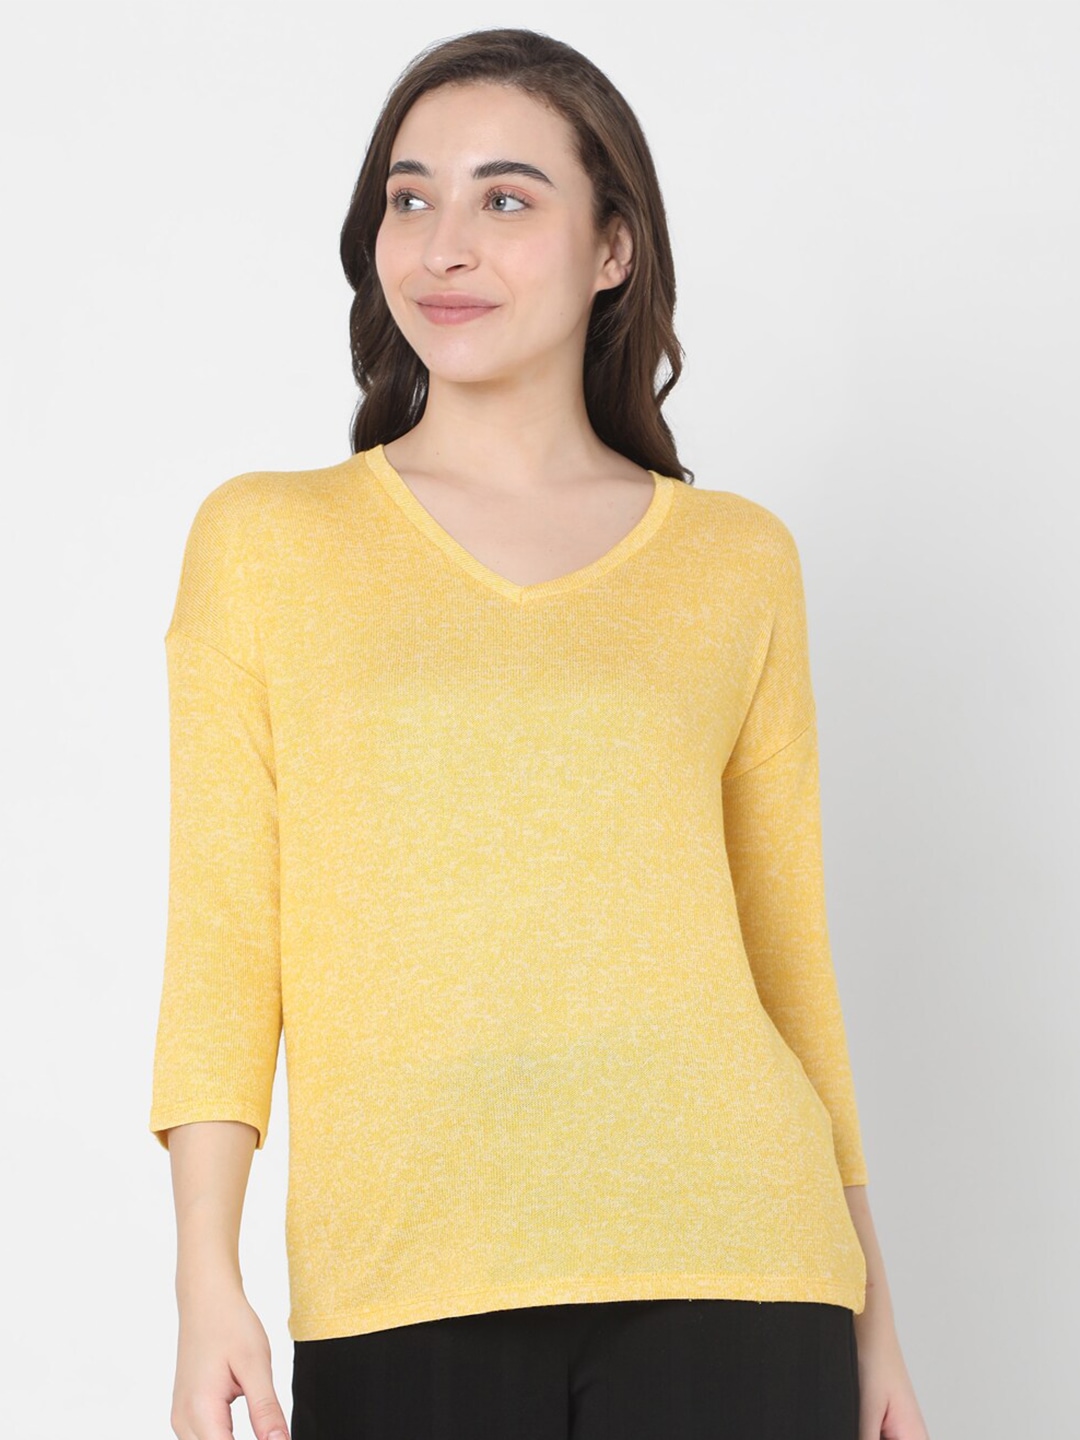 Vero Moda Women Yellow & Black Pullover Price in India